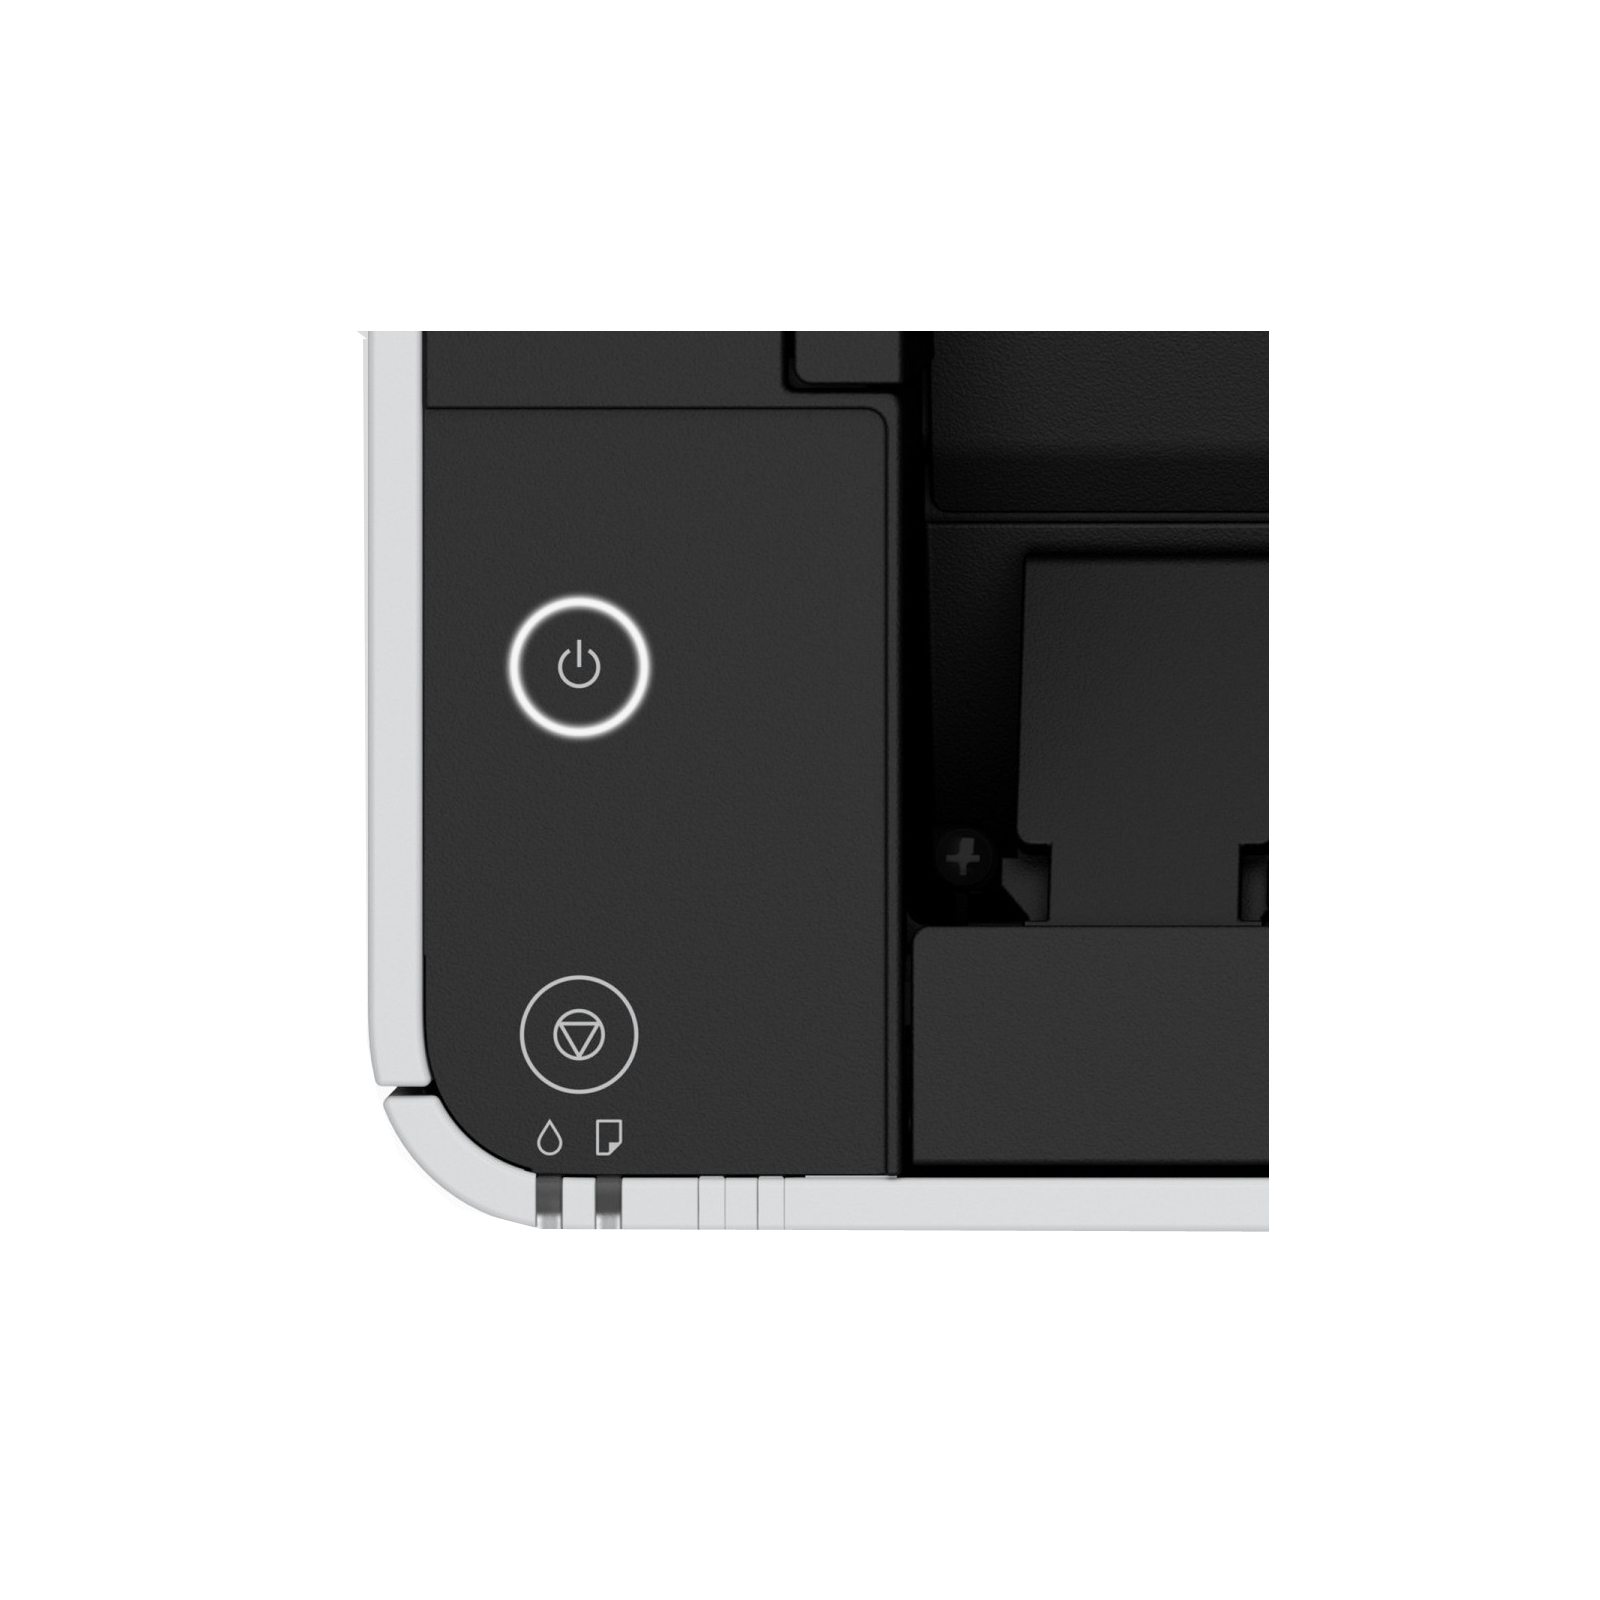 Струменевий принтер Epson M1140 (C11CG26405) зображення 5